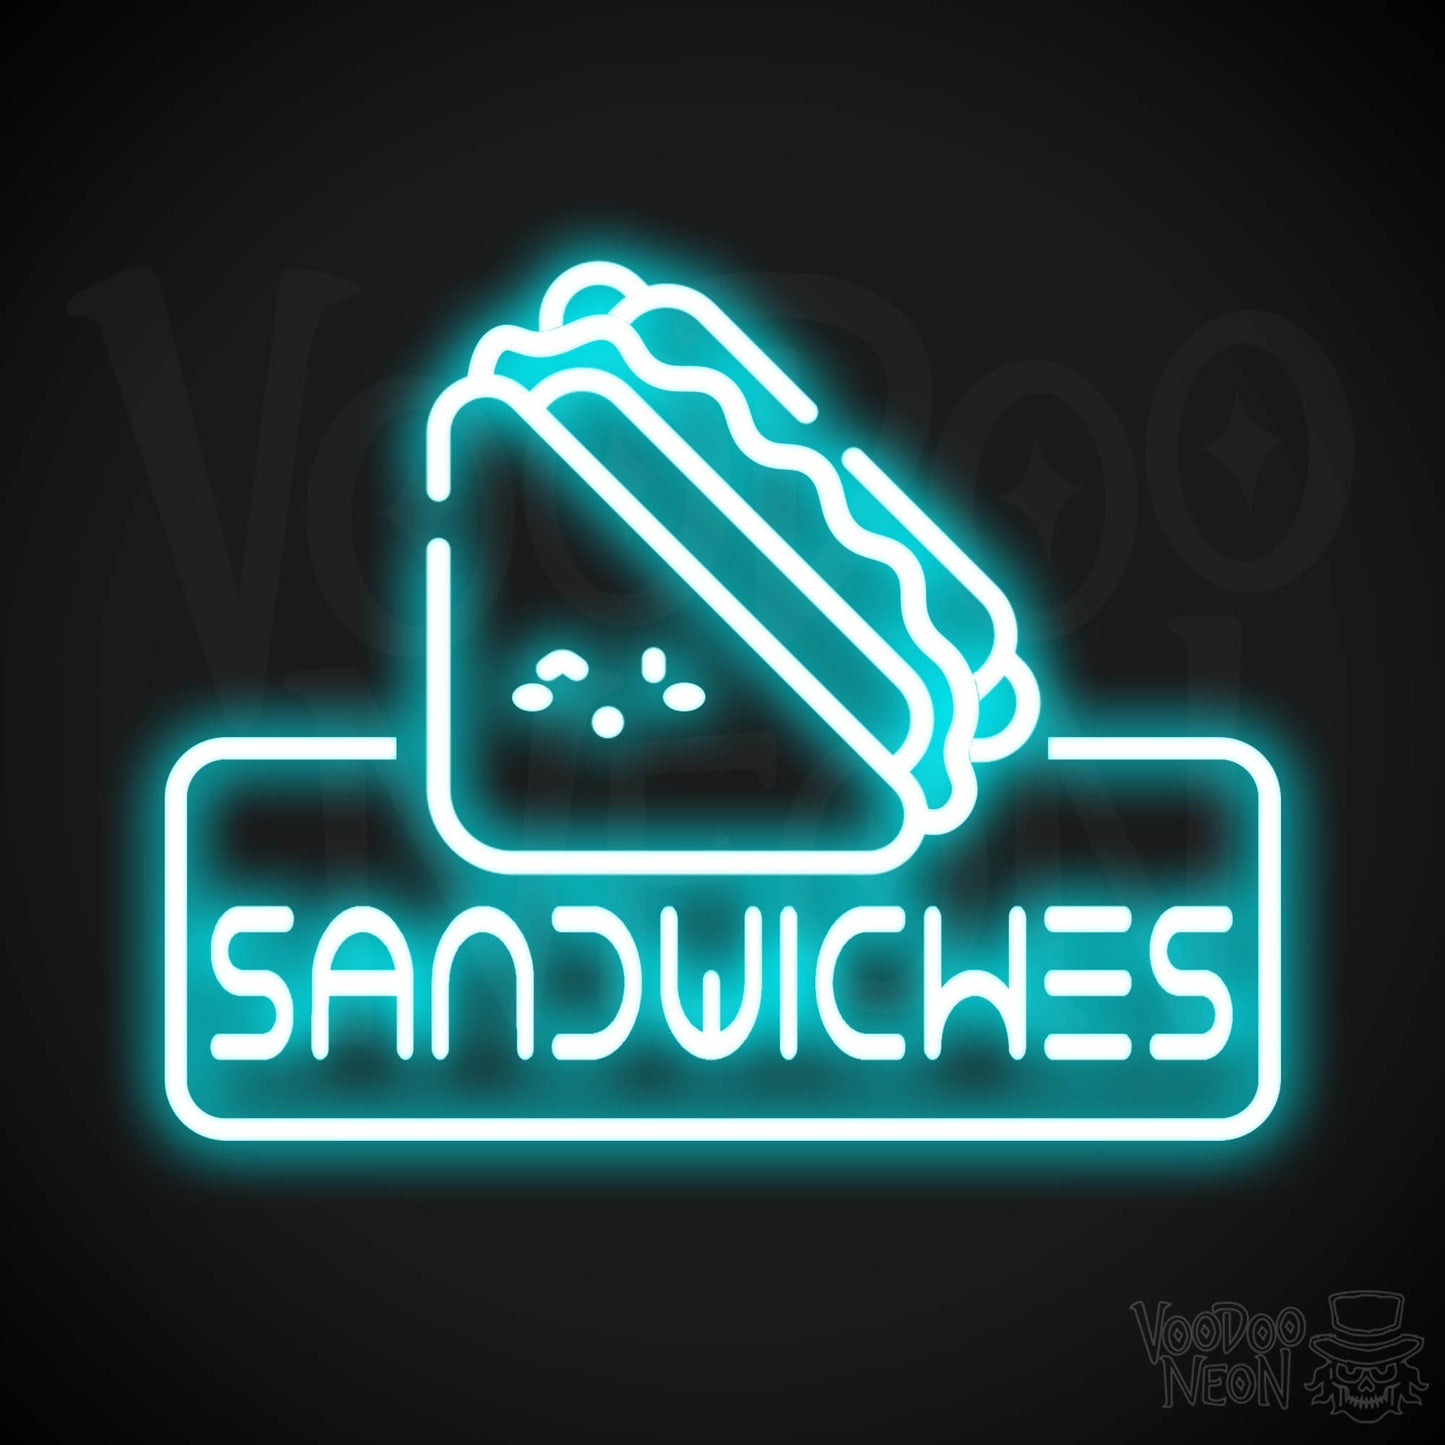 Neon Sandwiches Sign - Sandwich Neon Sign - Neon Sandwich Shop Sign - Color Ice Blue